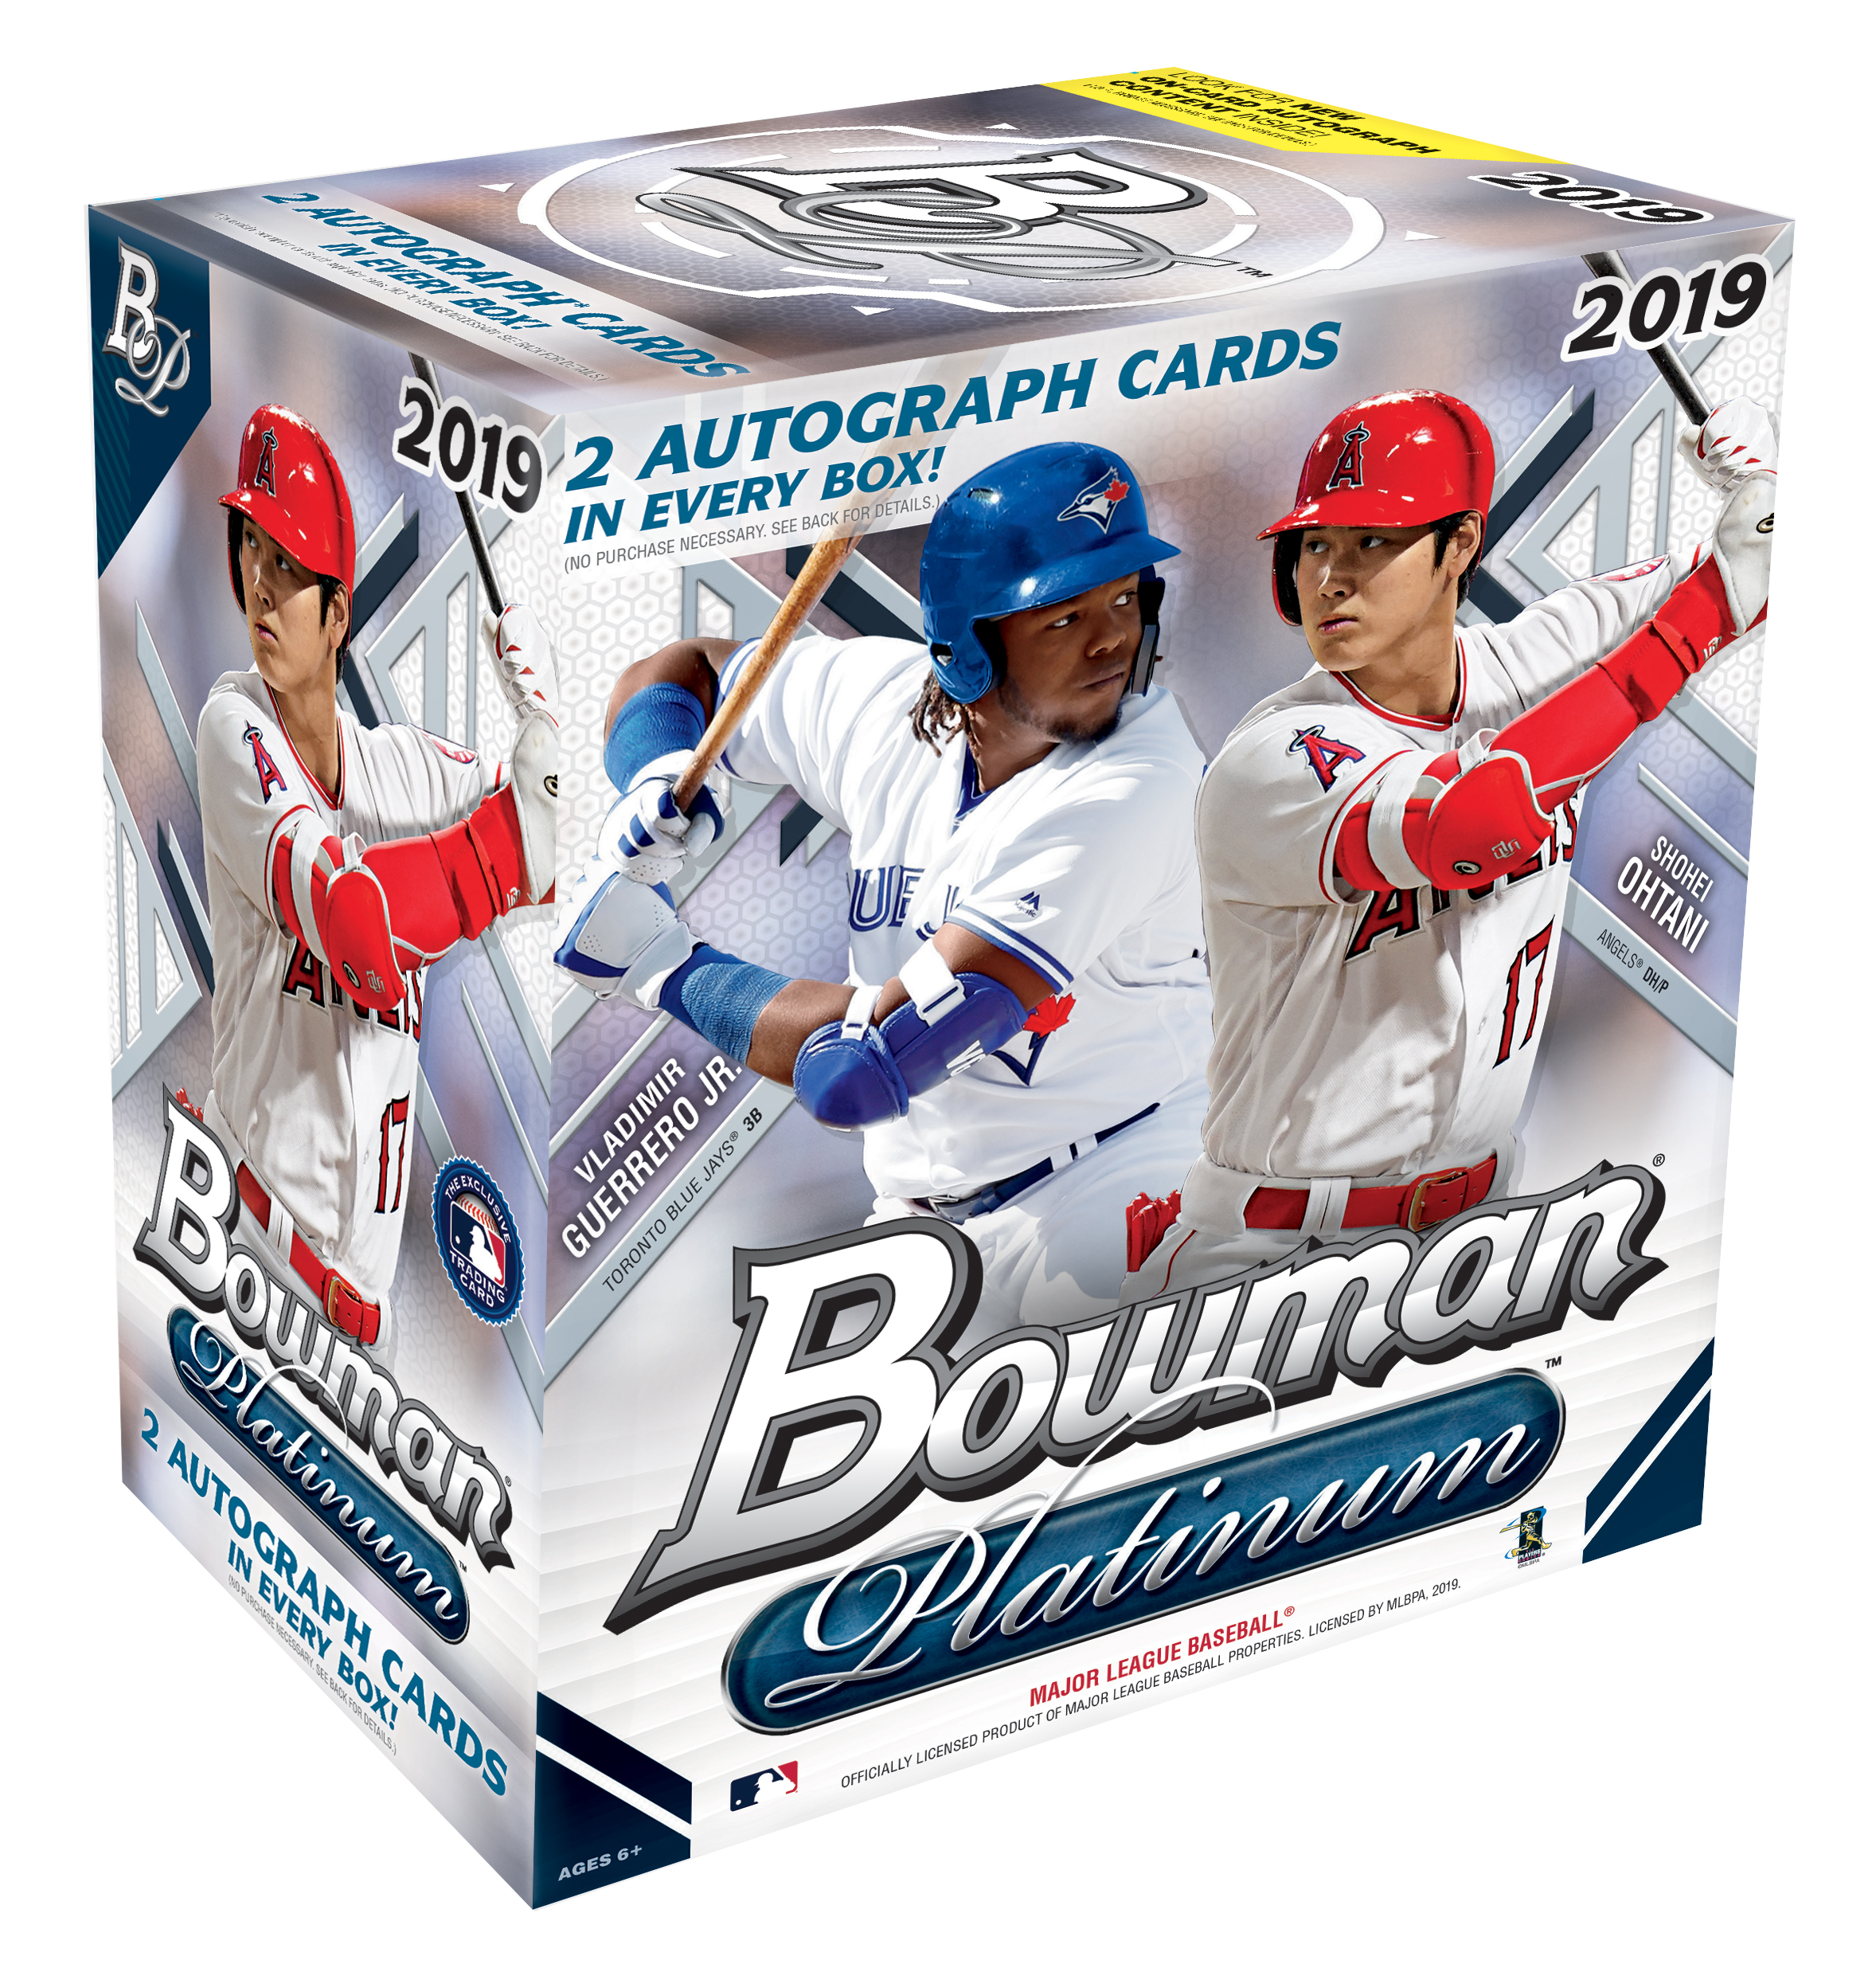 2019 Topps Bowman Platinum Baseball Monster Box- 2 Autographs per Box | 100 Topps Bowman Baseball Trading Cards | Feat. Vladimir Guerrero Jr. & Shohei Ohtani - image 1 of 2